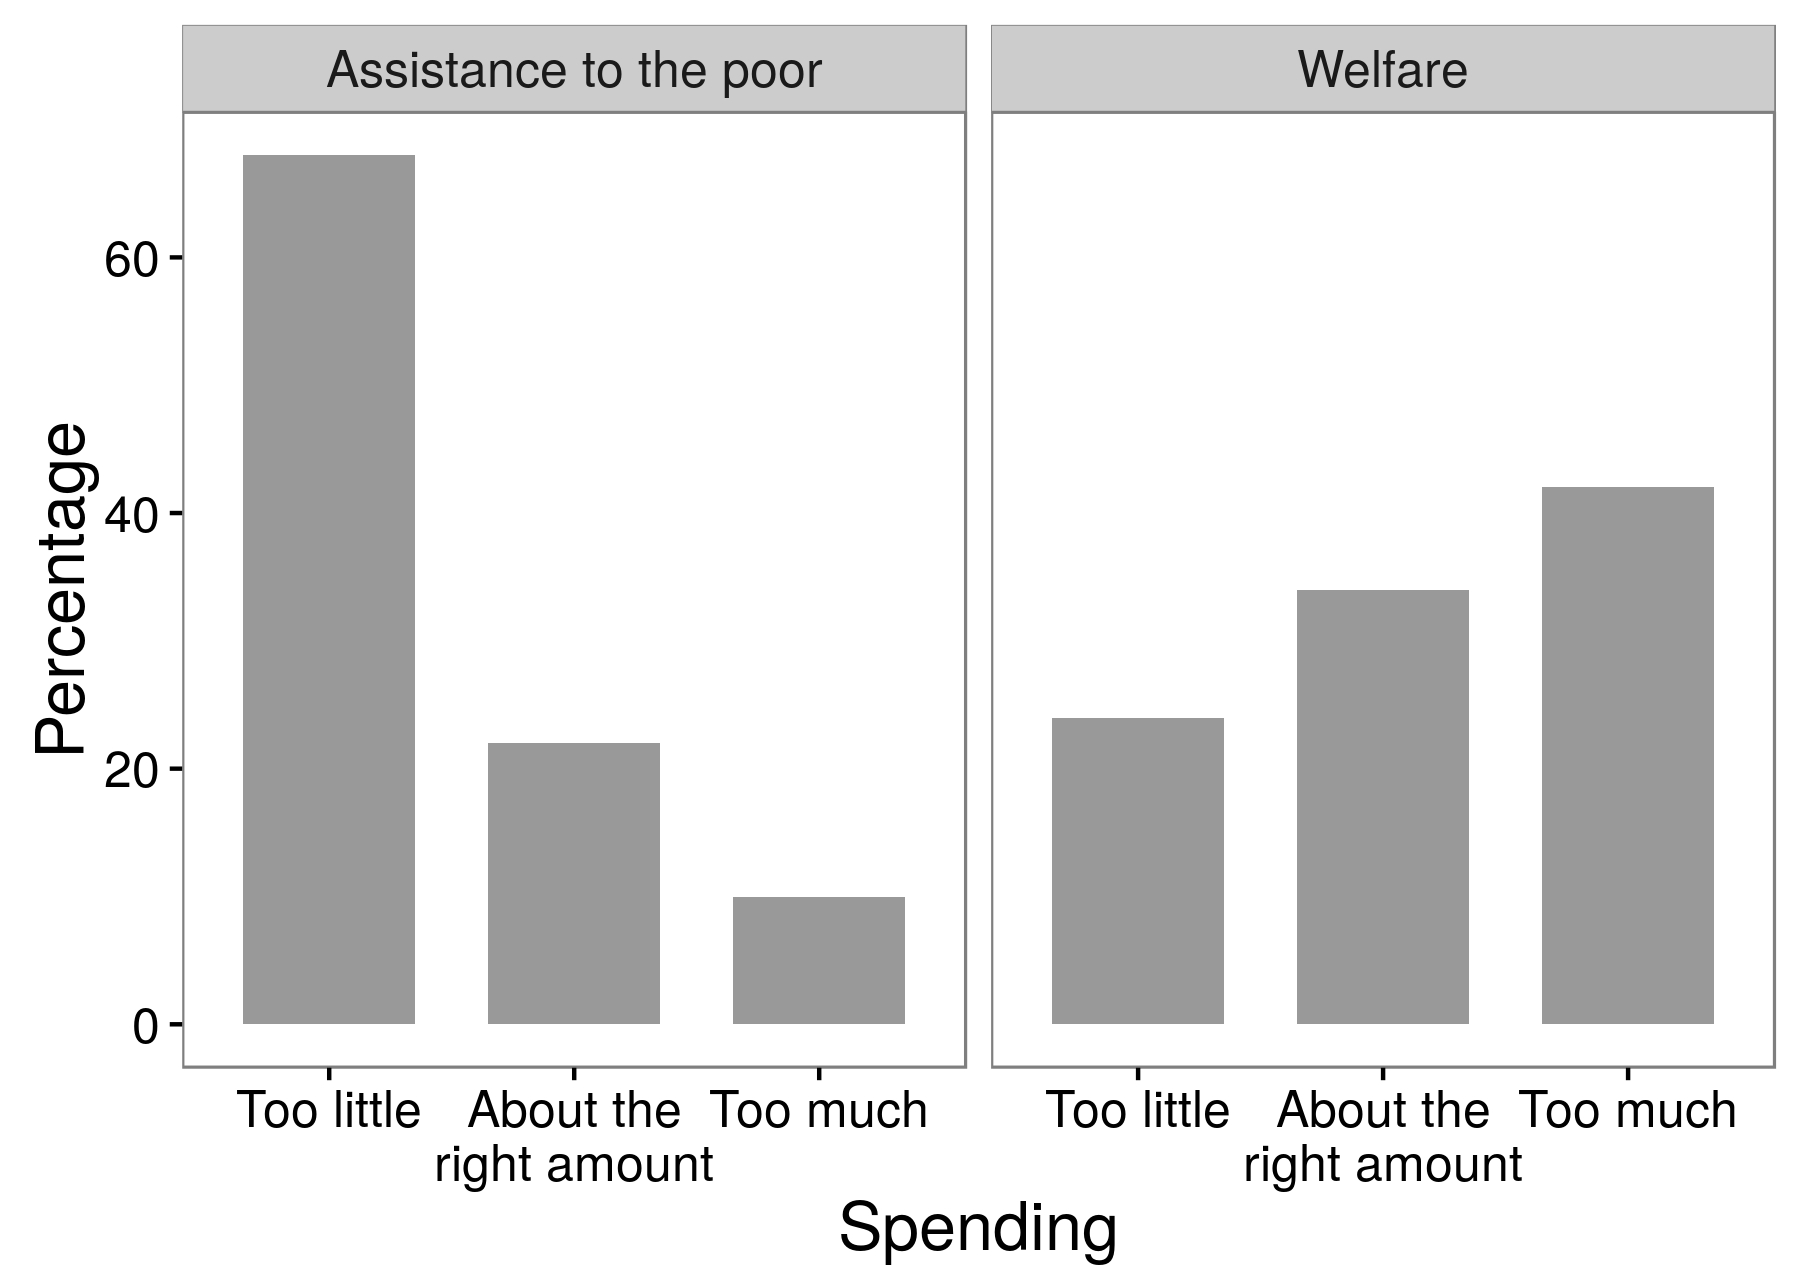 Фигура 3.4: Резултатите от експерименти с проучвания, показващи, че анкетираните подкрепят много повече помощите за бедните, отколкото благосъстоянието. Това е пример за ефекта на формулировката на въпросите, при който отговорите, които изследователите получават, зависят точно от кои думи използват в своите въпроси. Адаптиран от Хубер и Париж (2013 г.), таблица А1.